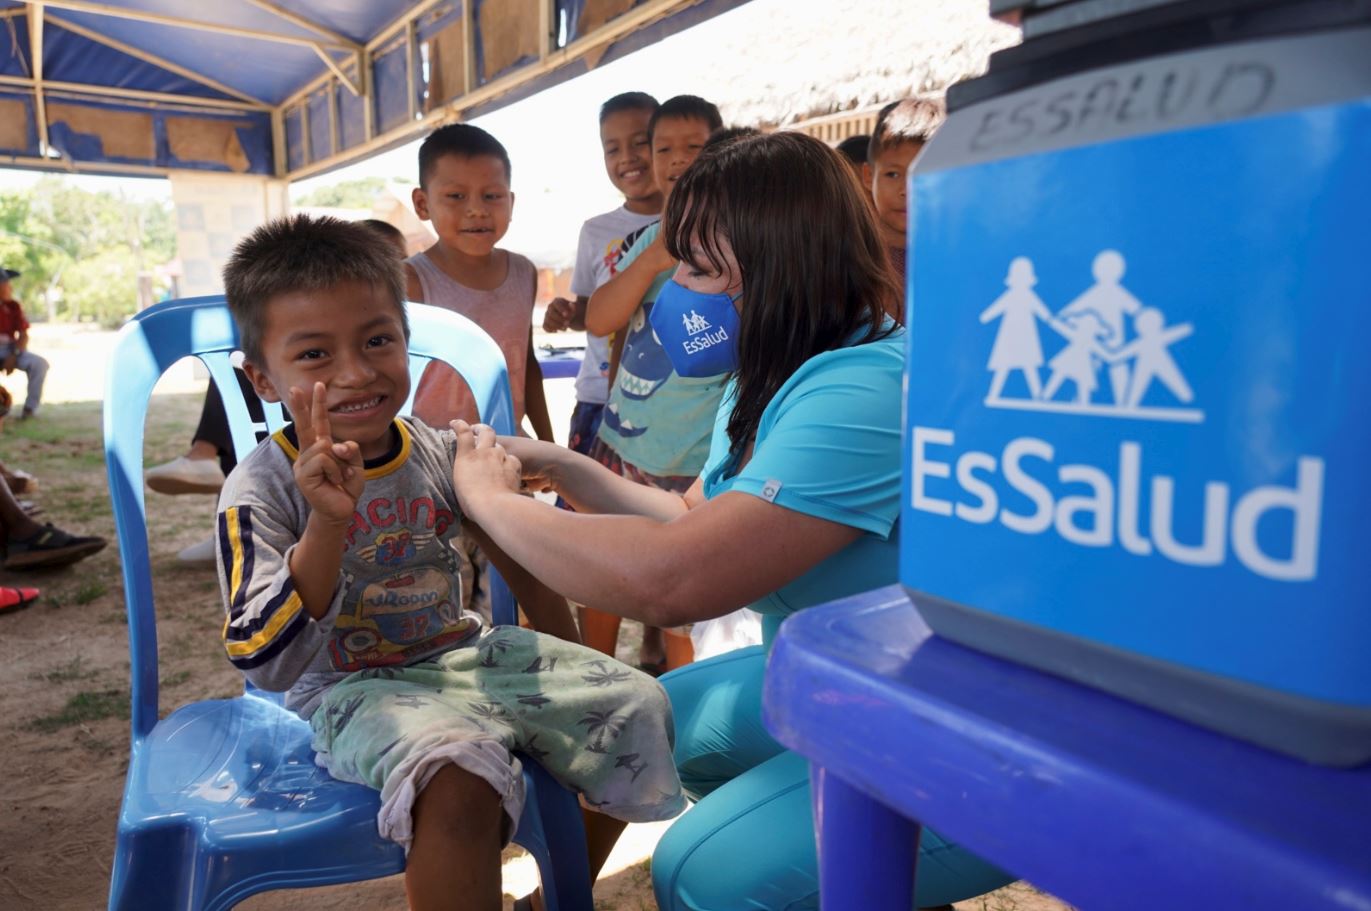 Essalud - Pucallpa: EsSalud llega a comunidad nativa con campaña de prevención del dengue y vacunación contra la COVID-19